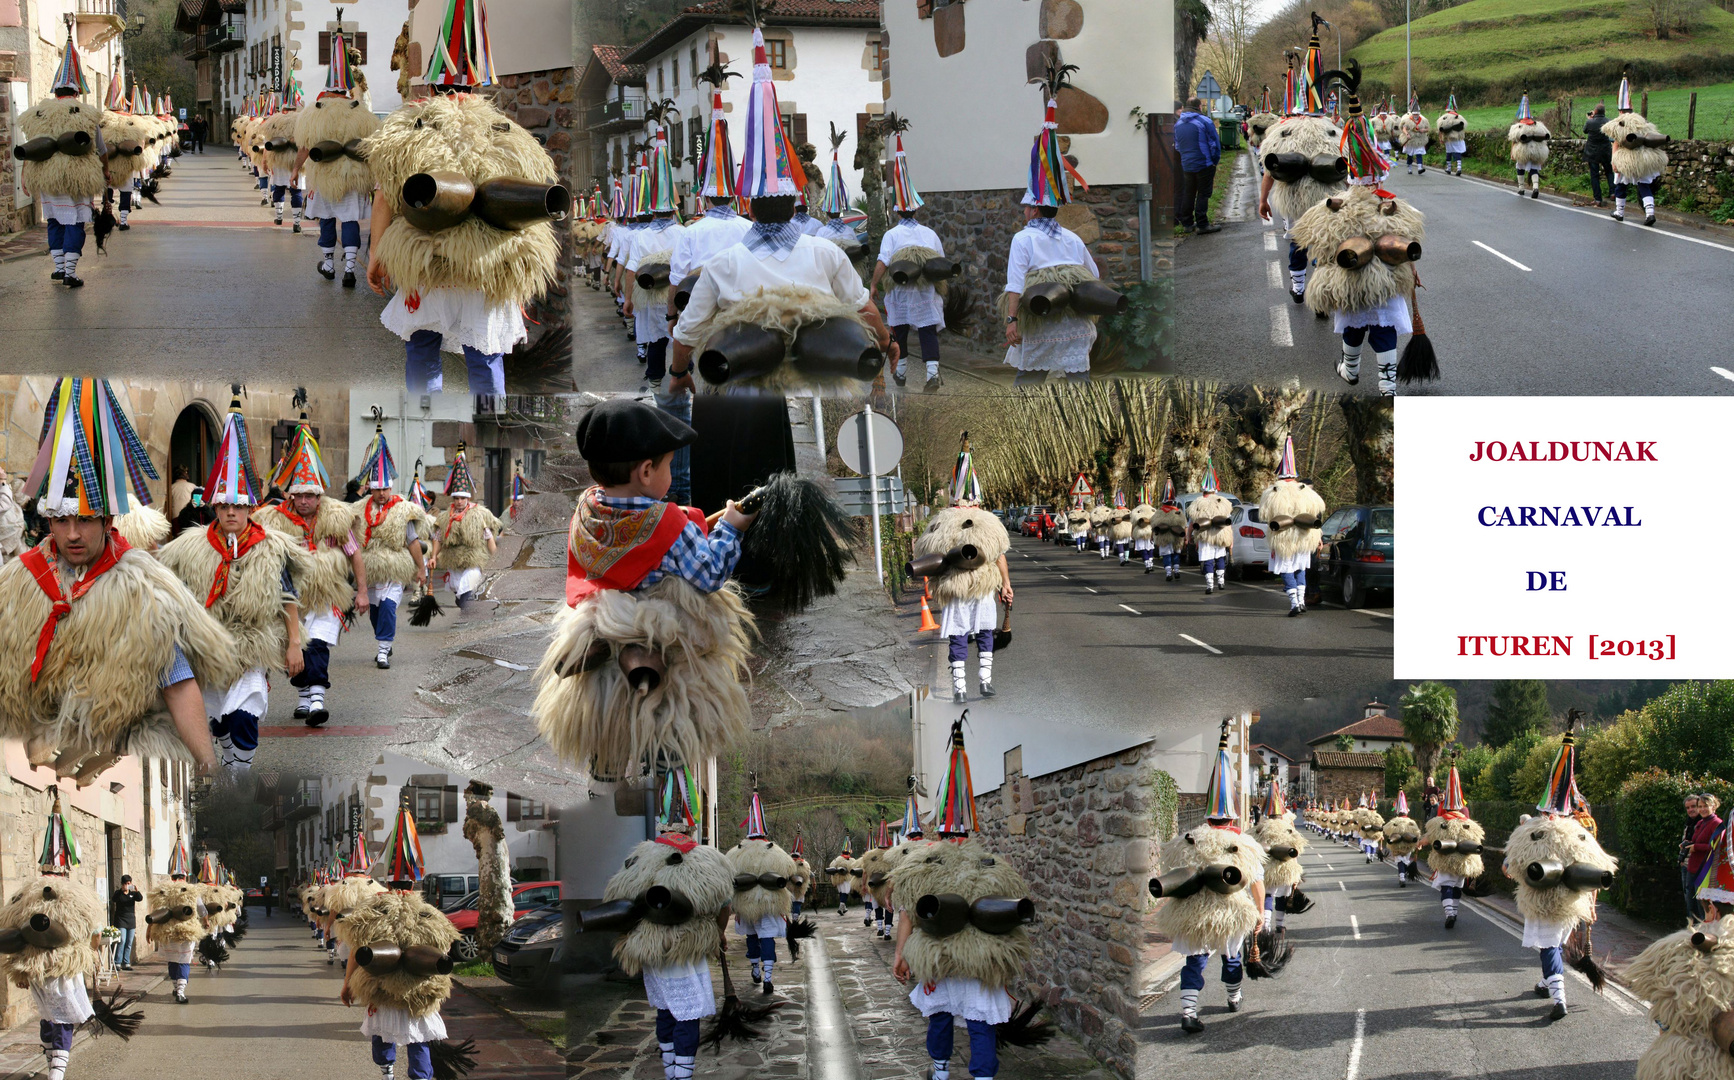 Joaldunak de Ituren y Zubieta en el Carnaval 2013.